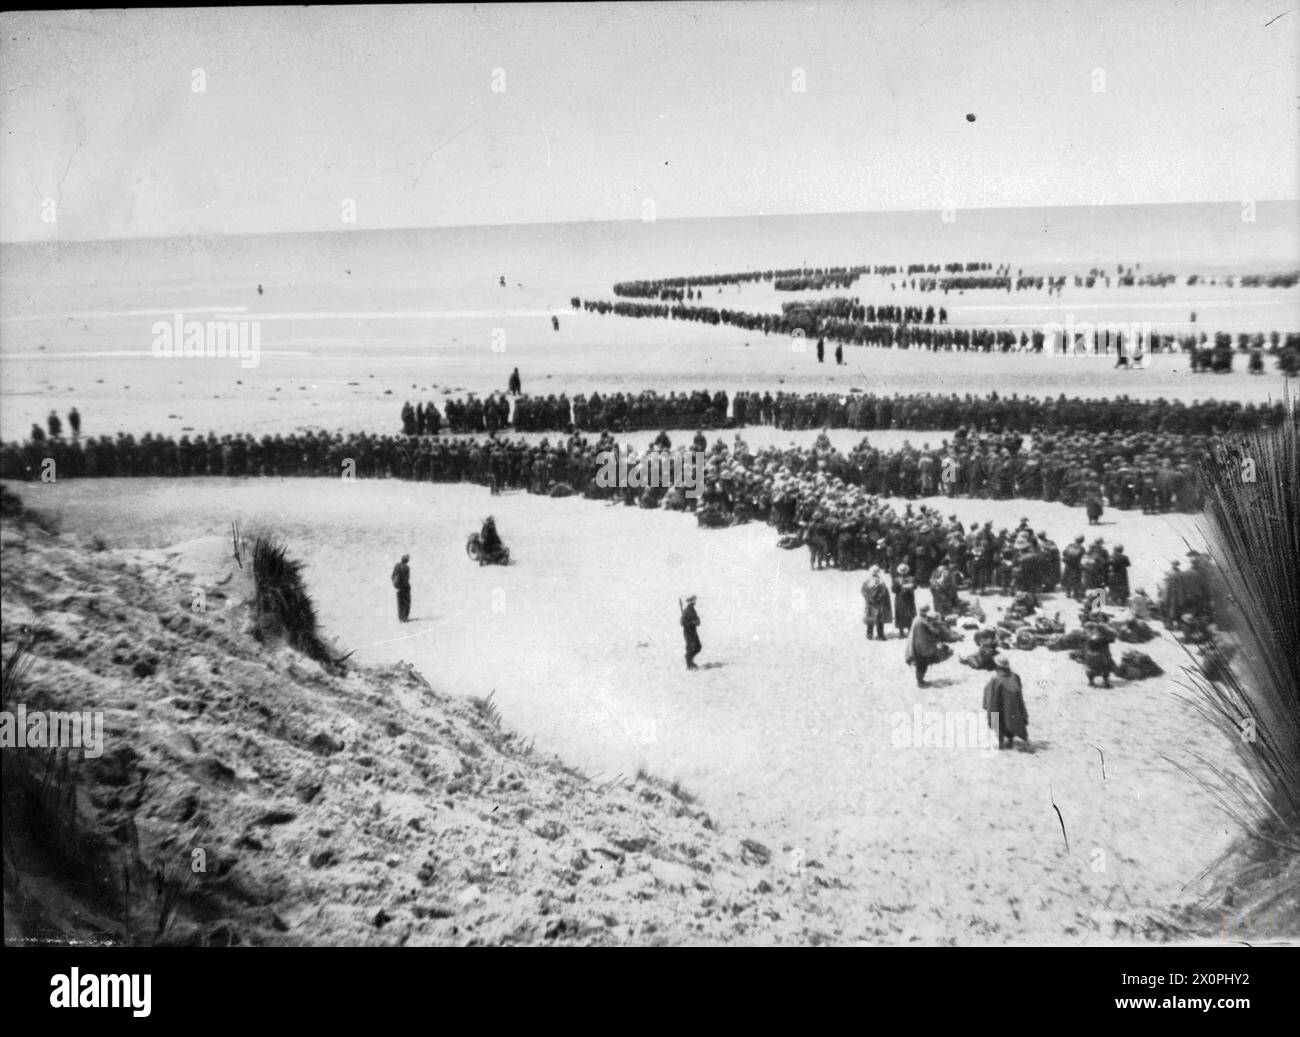 DUNKERQUE 26-29 MAGGIO 1940 - le truppe britanniche si schierano sulla spiaggia di Dunkerque per attendere l'evacuazione dell'esercito britannico Foto Stock